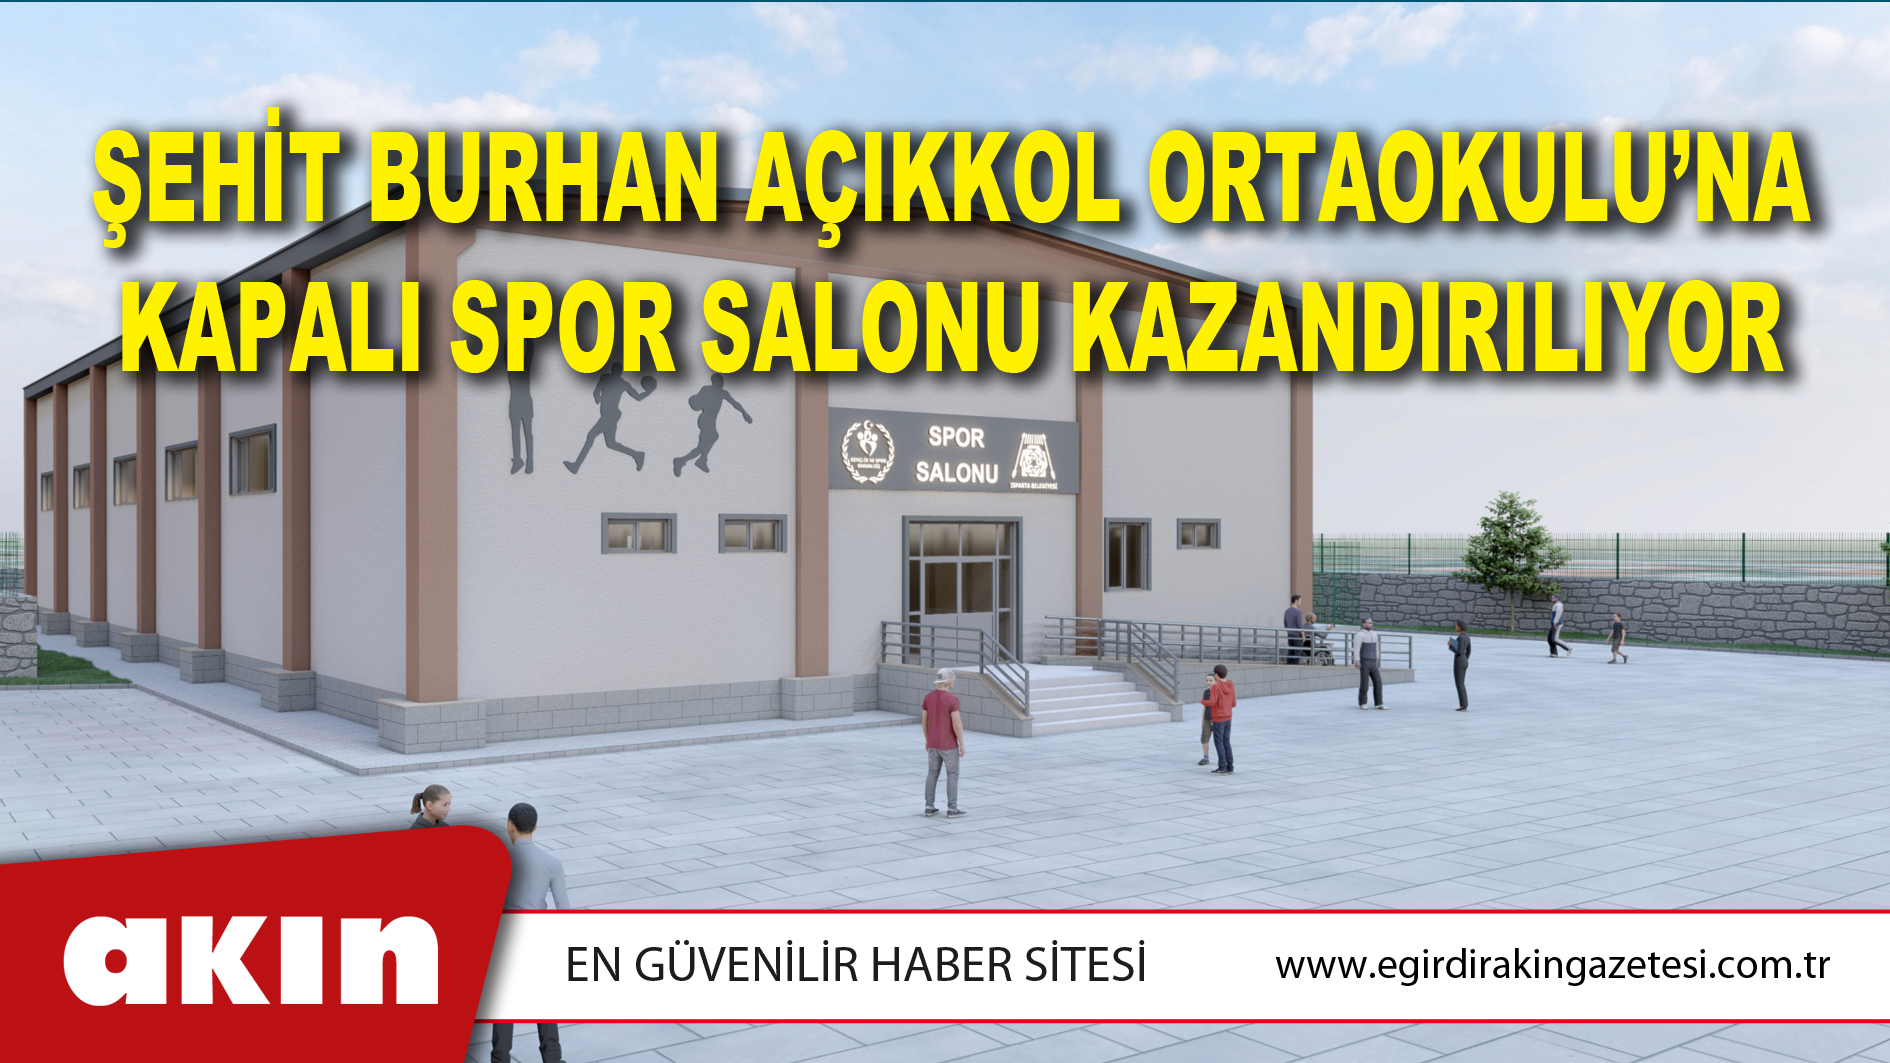 Şehit Burhan Açıkkol Ortaokulu’na Kapalı Spor Salonu Kazandırılıyor